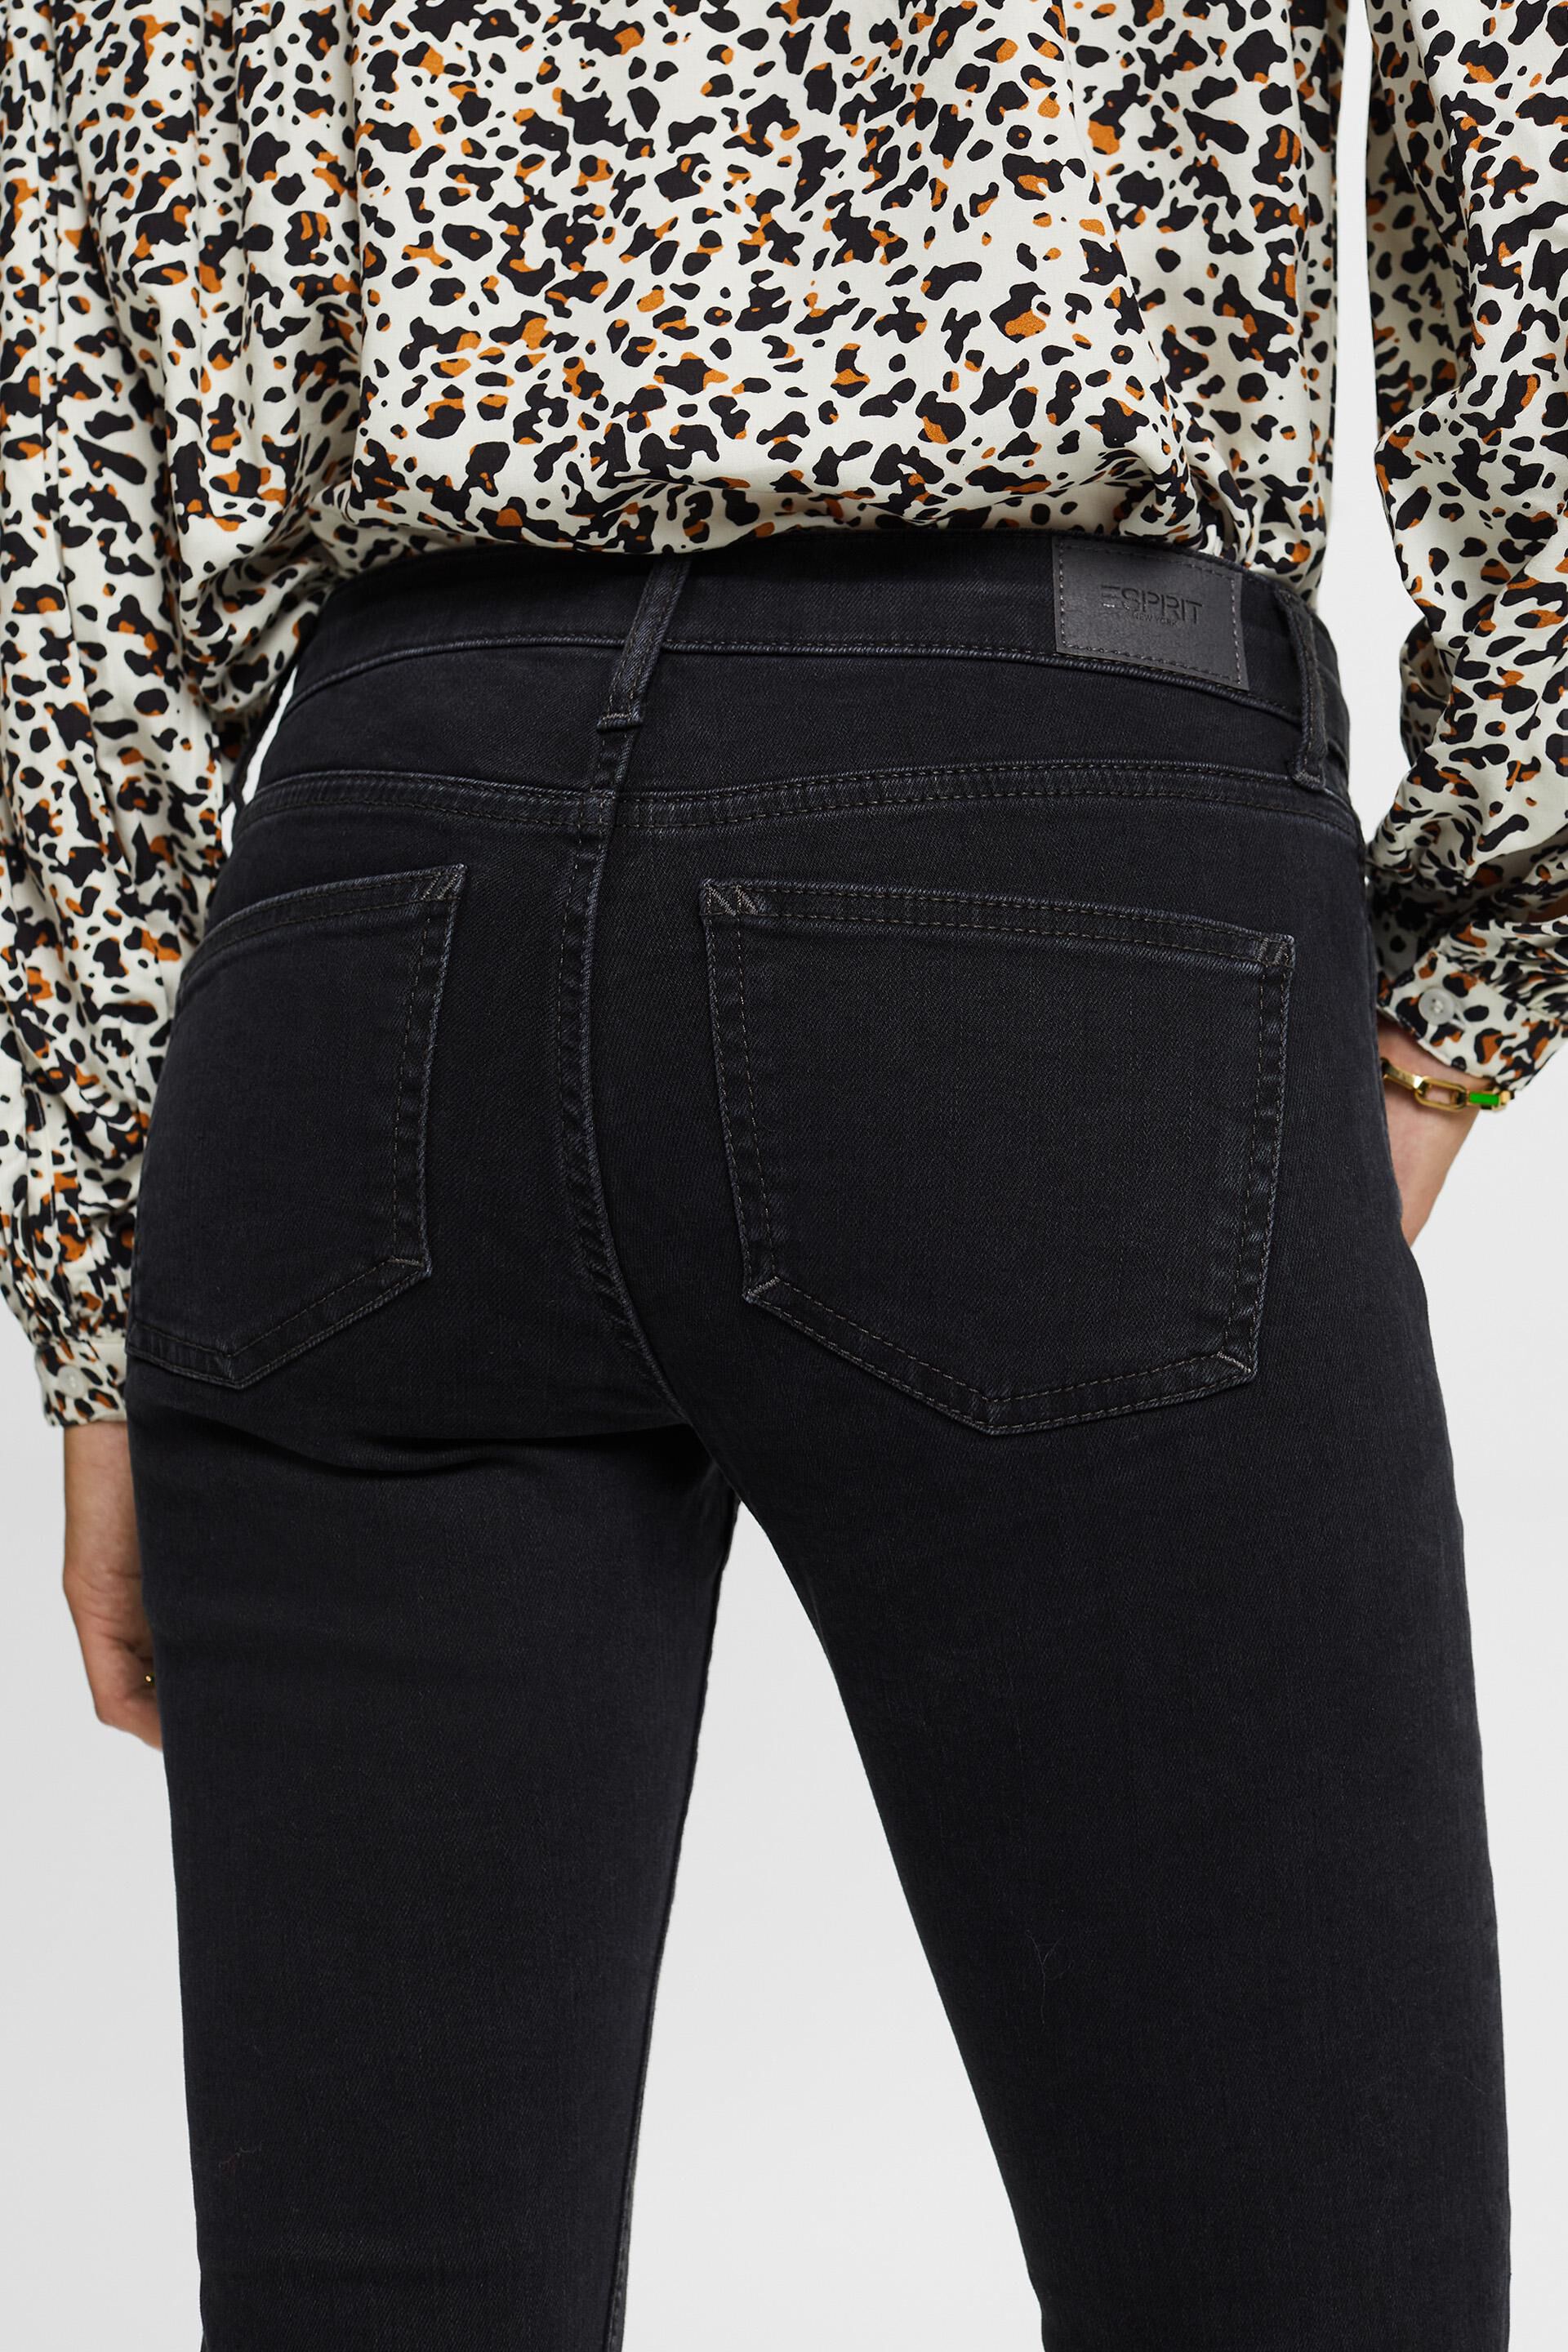 Esprit Damen Bootcut-Jeans mit mittelhohem Bund